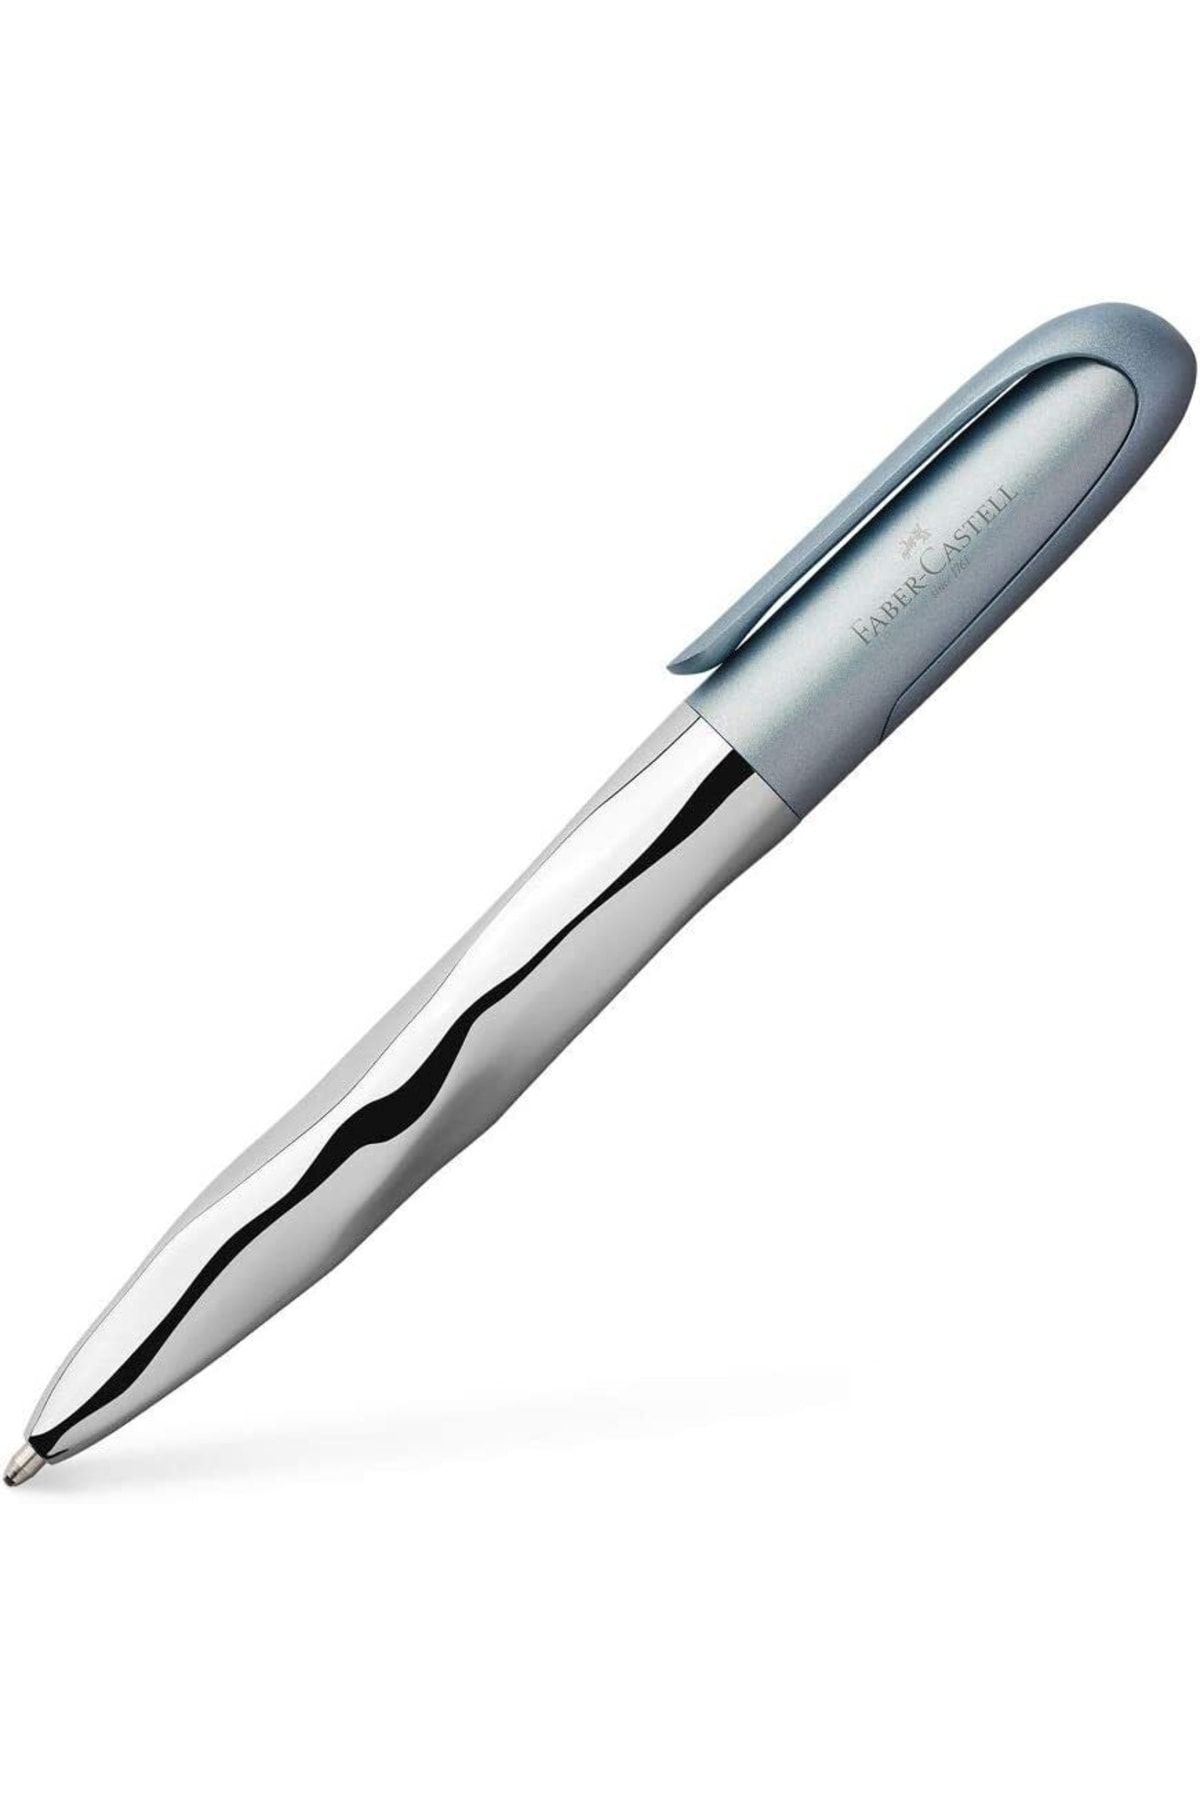 FBR Faber-castell Nice Pen Tükenmez Kalem, Metalik Açık Mavi